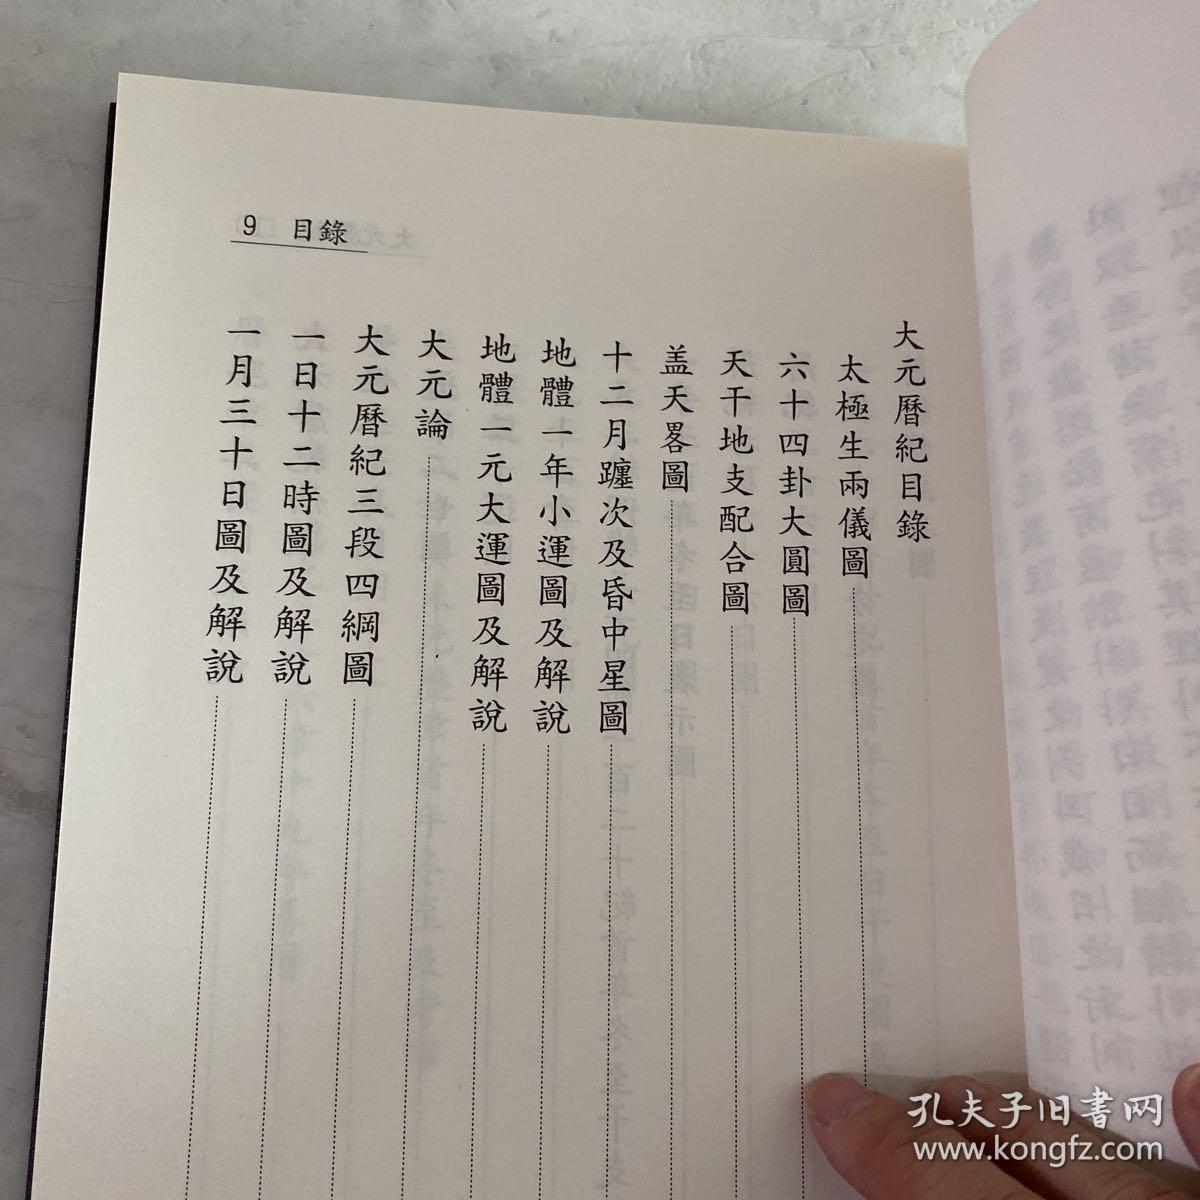 大元历纪 朝鲜学者关于古代历法的研究 有目录 汉字 精装 作者崔硕基（1904-1987）朝鲜末期儒家学者、教育家、思想家、周易学家 弟子数千人